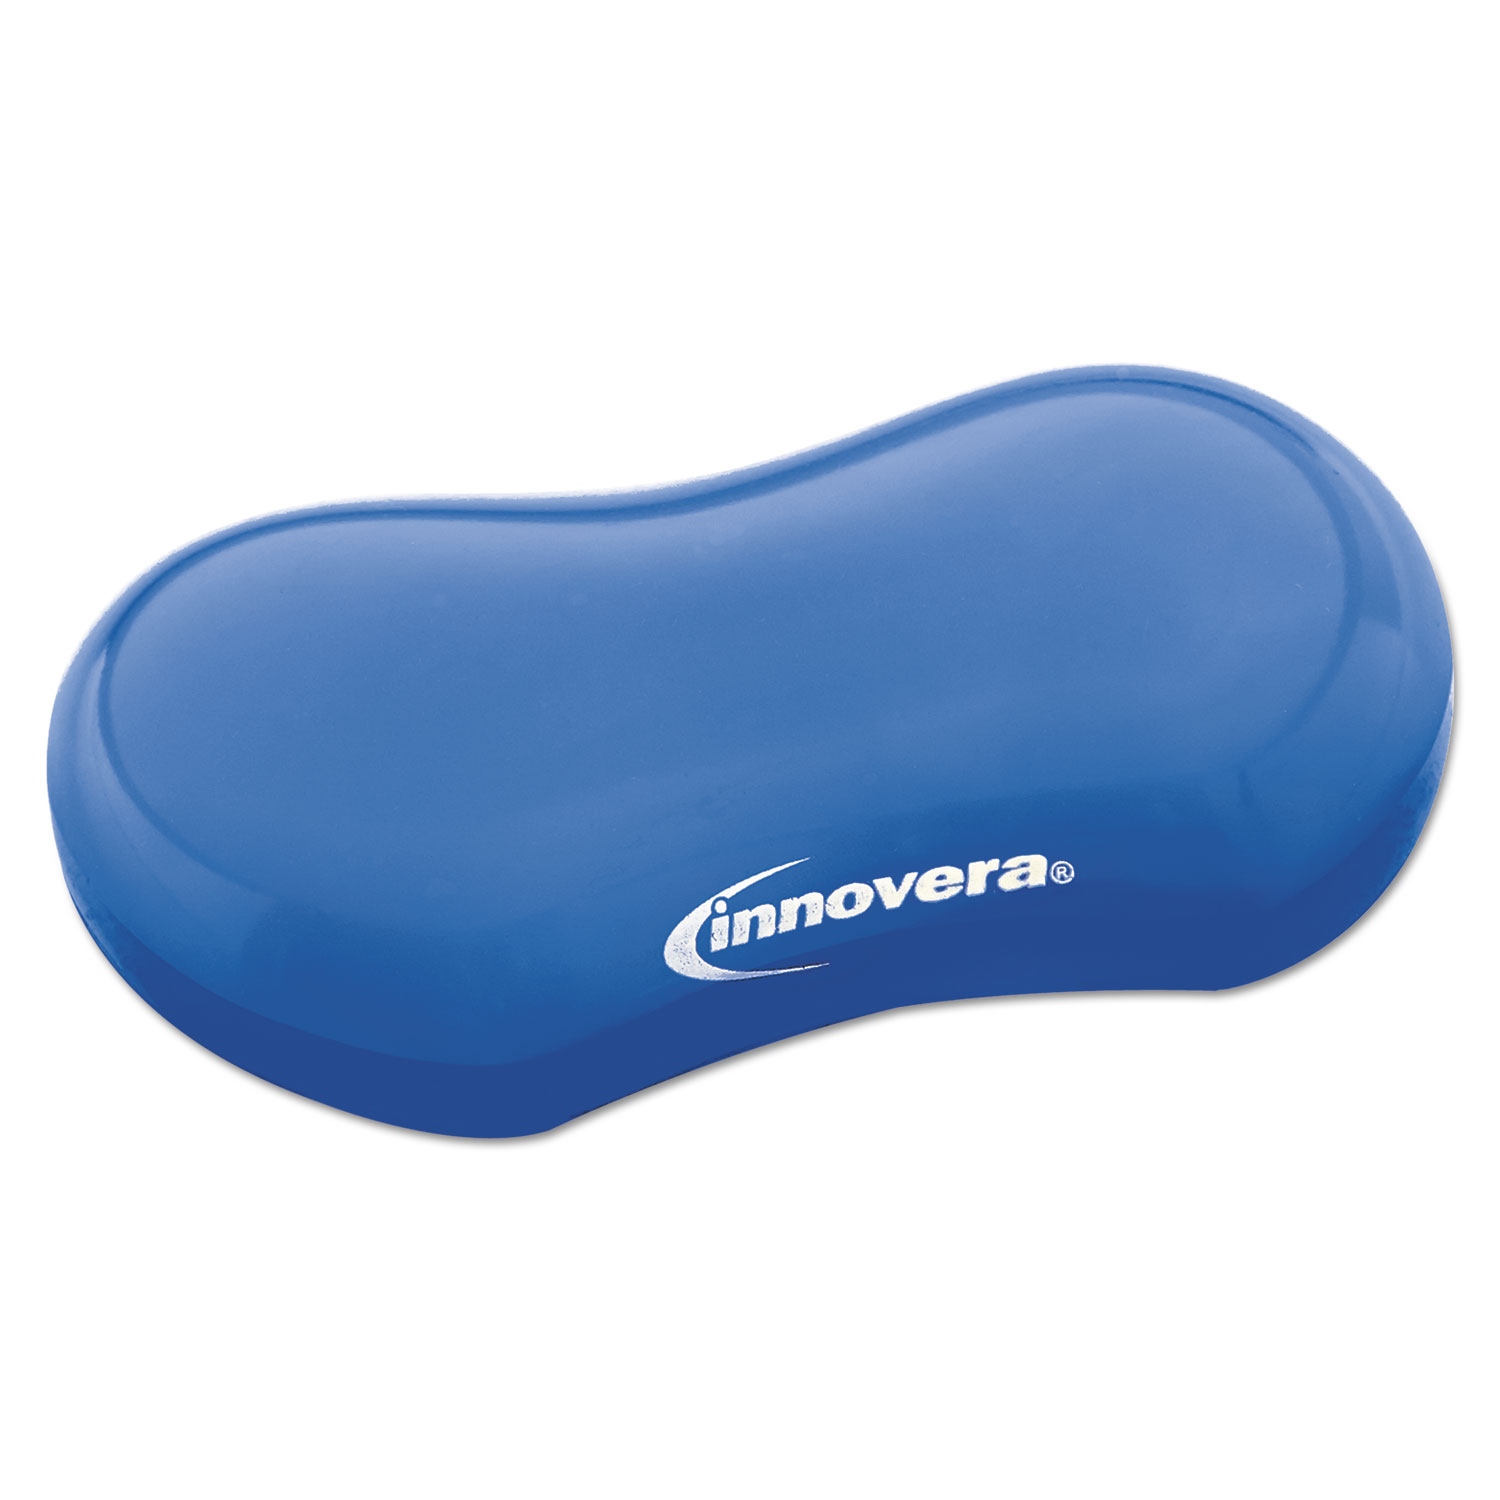  Innovera IVR51432 Gel Mouse Wrist Rest, Blue (IVR51432) 